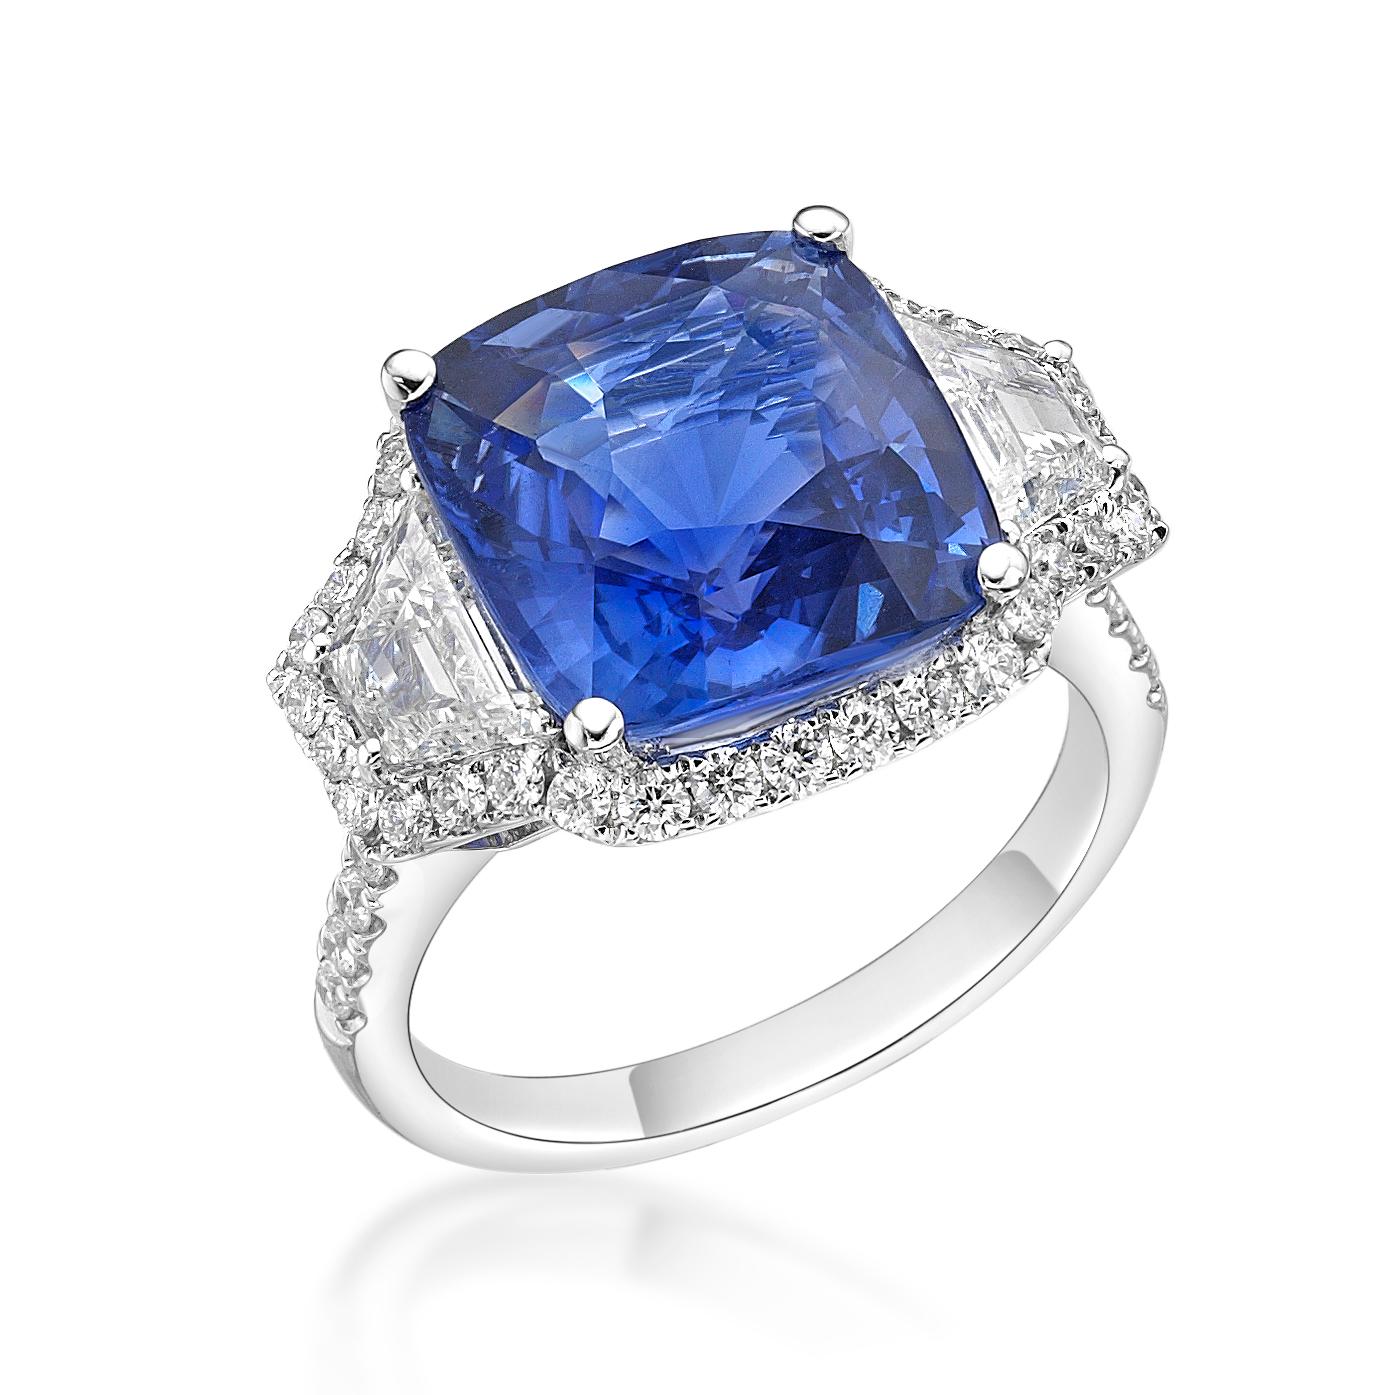 Au centre de cette bague exquise se trouve un saphir bleu coussin non chauffé de 9,16 ct, originaire du Sri Lanka. La pierre précieuse est flanquée de deux diamants trapèze entourés d'un halo de diamants étincelants. Cette bague peut être